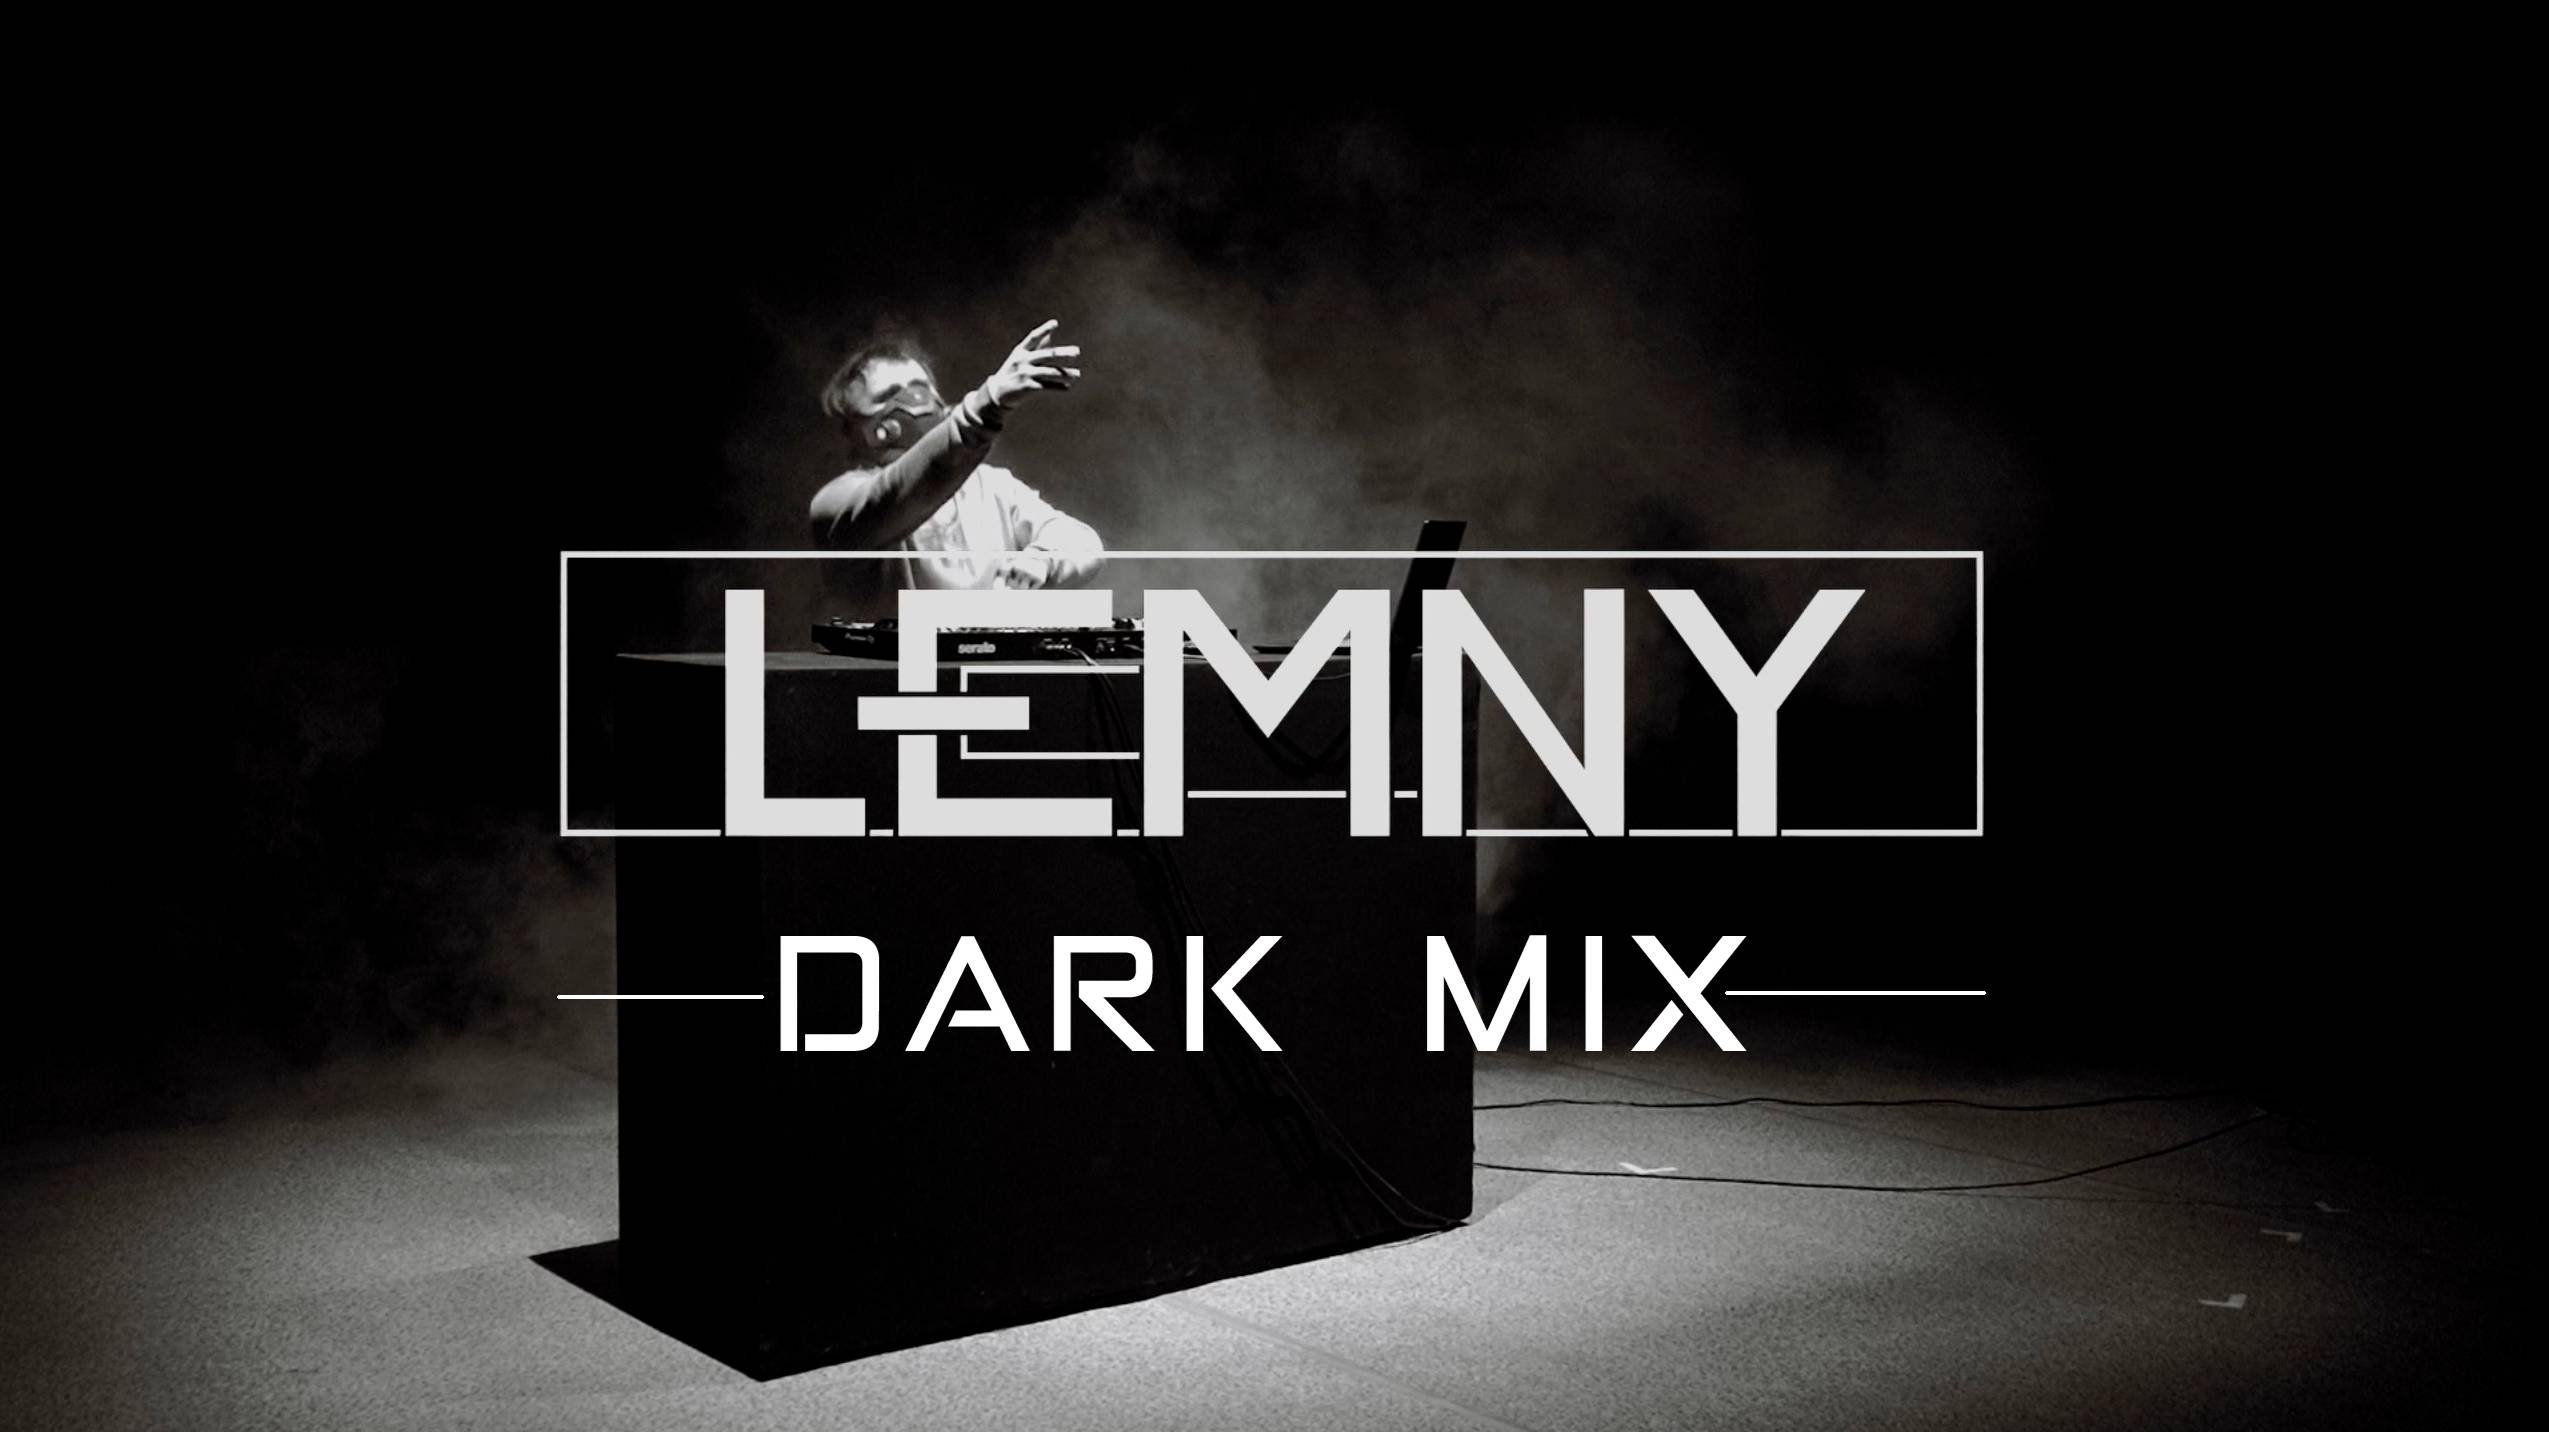 LEMNY - DARK MIX (Deep Dubstep)